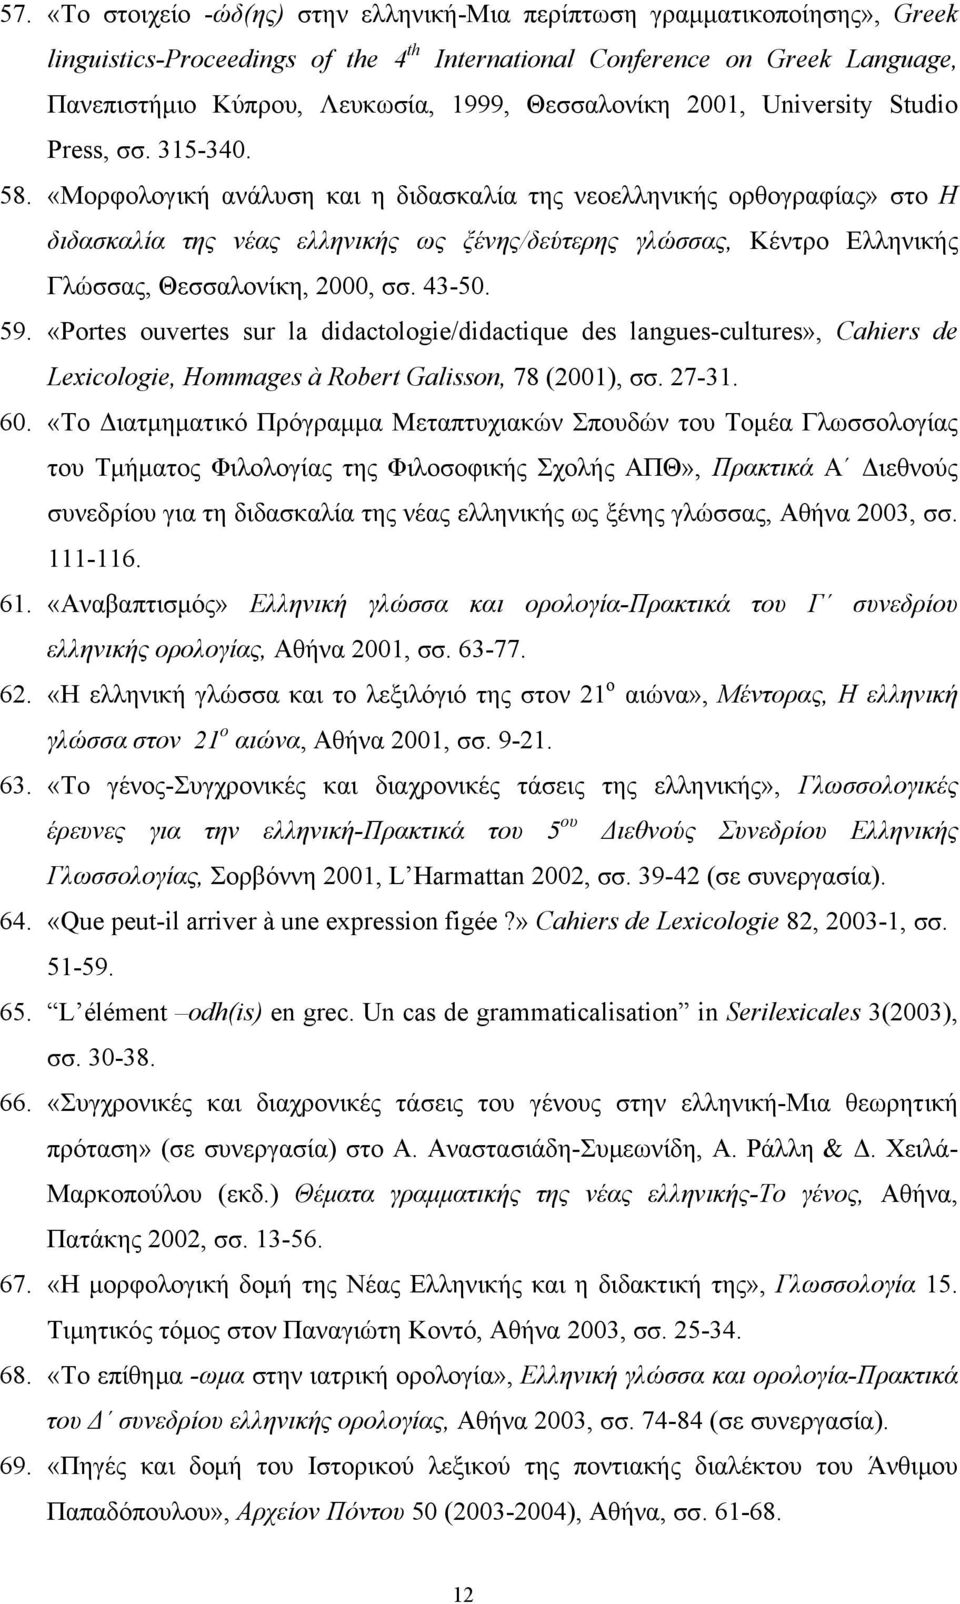 «Μορφολογική ανάλυση και η διδασκαλία της νεοελληνικής ορθογραφίας» στο Η διδασκαλία της νέας ελληνικής ως ξένης/δεύτερης γλώσσας, Κέντρο Ελληνικής Γλώσσας, Θεσσαλονίκη, 2000, σσ. 43-50. 59.